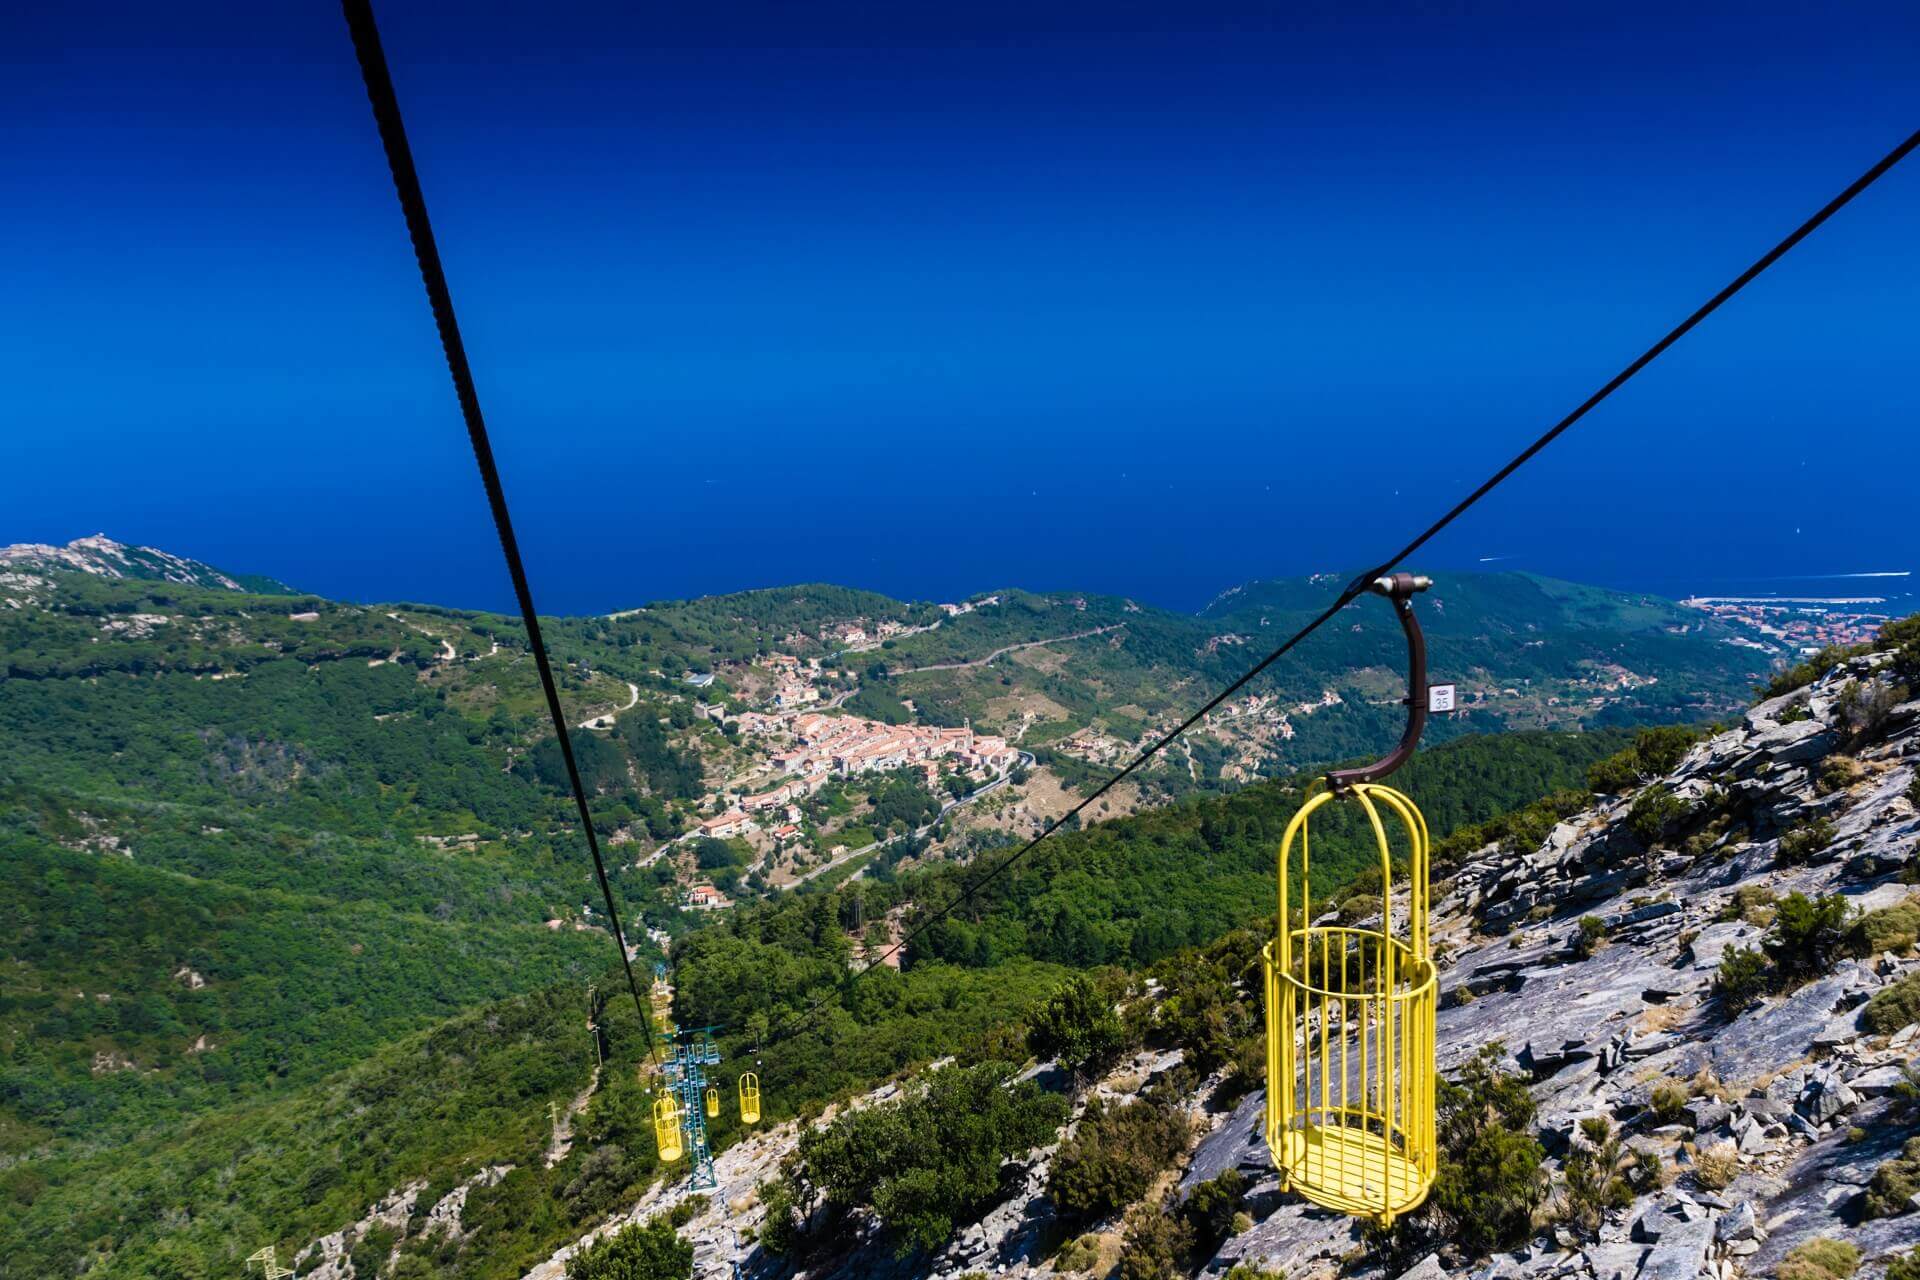 Der Lift hinauf zum Monte Capanne auf Elba muss man erlebt haben